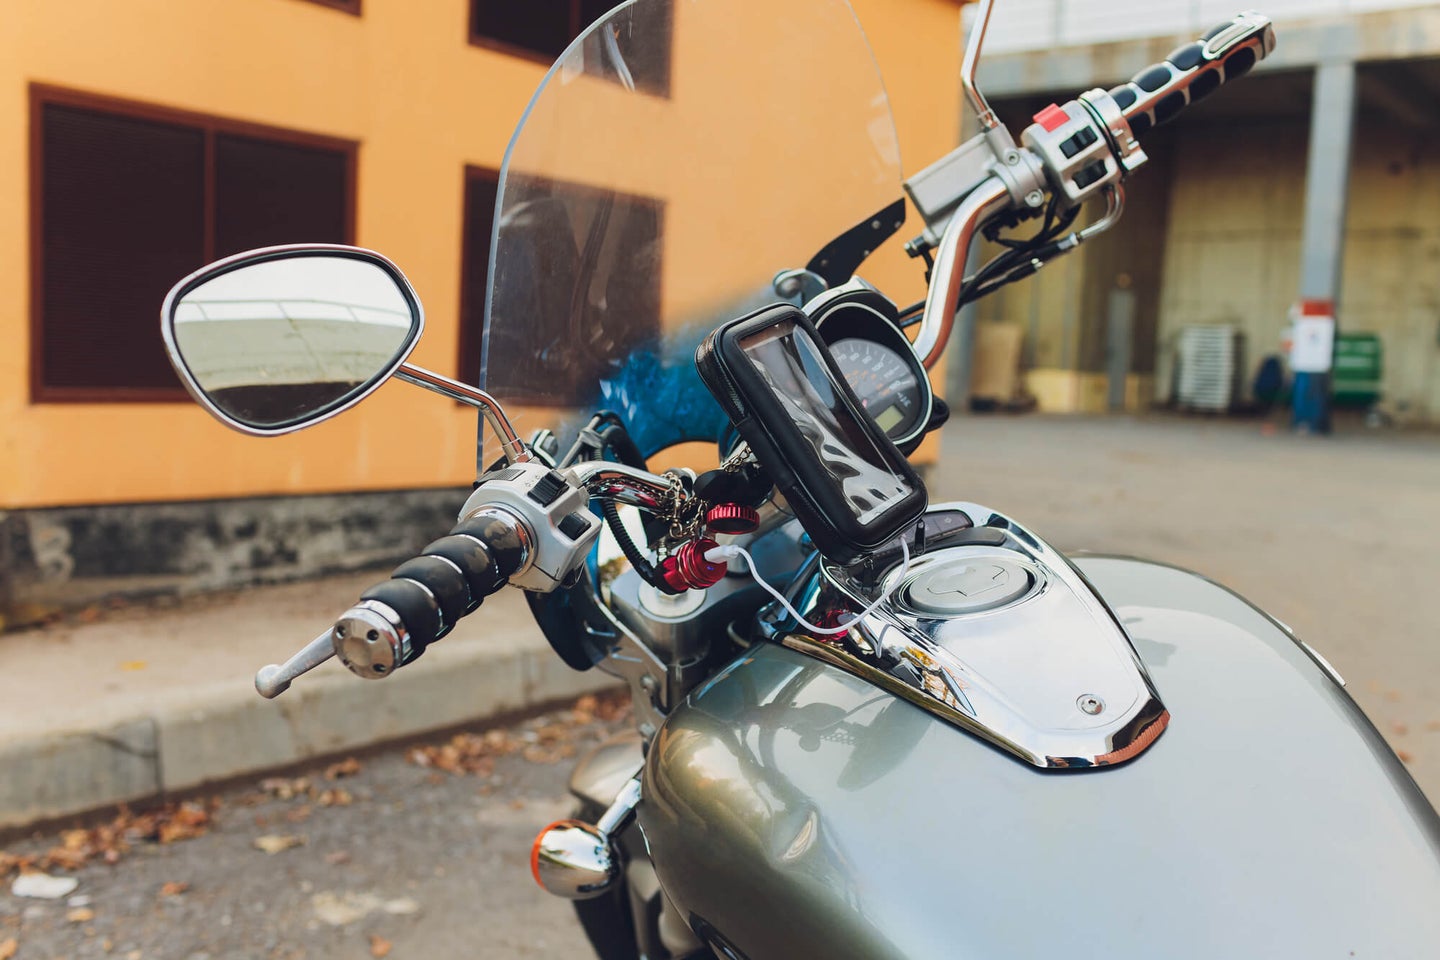 Motorrad usb stick - Die ausgezeichnetesten Motorrad usb stick ausführlich verglichen!